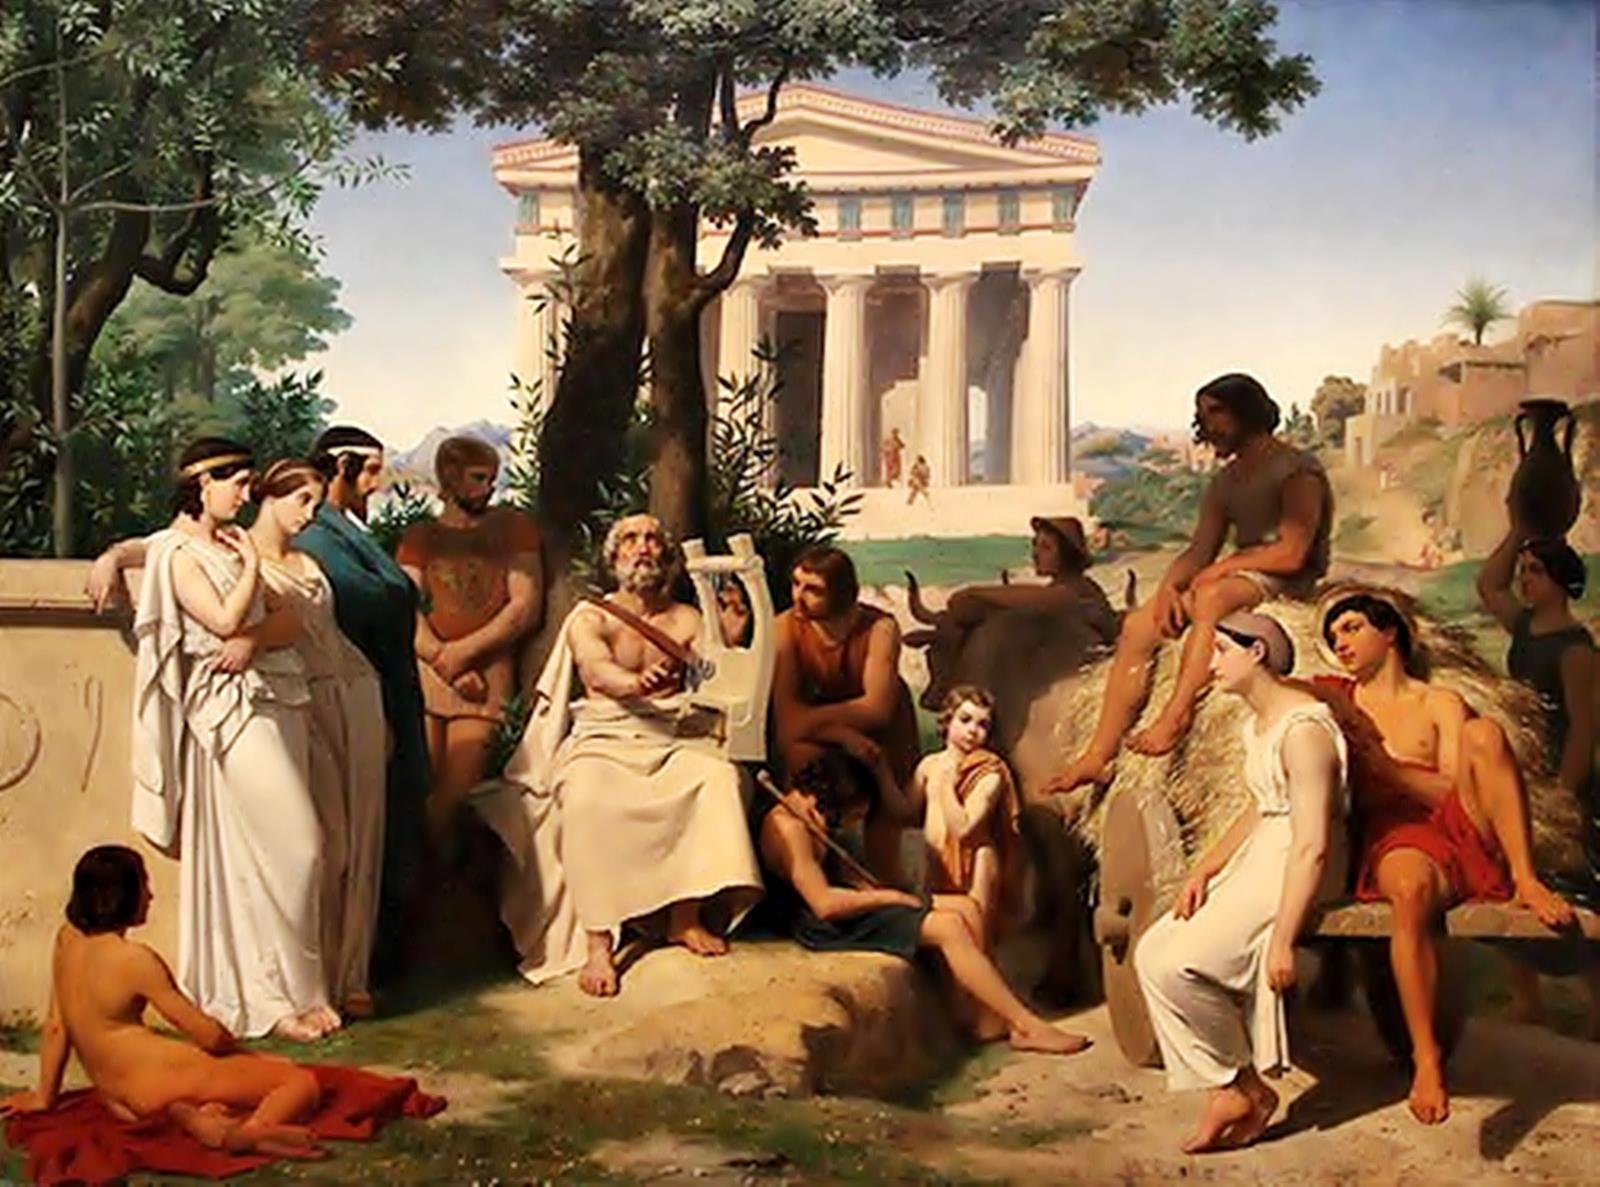 Πως έπαιρναν διαζύγιο στην Αρχαία Ελλάδα;